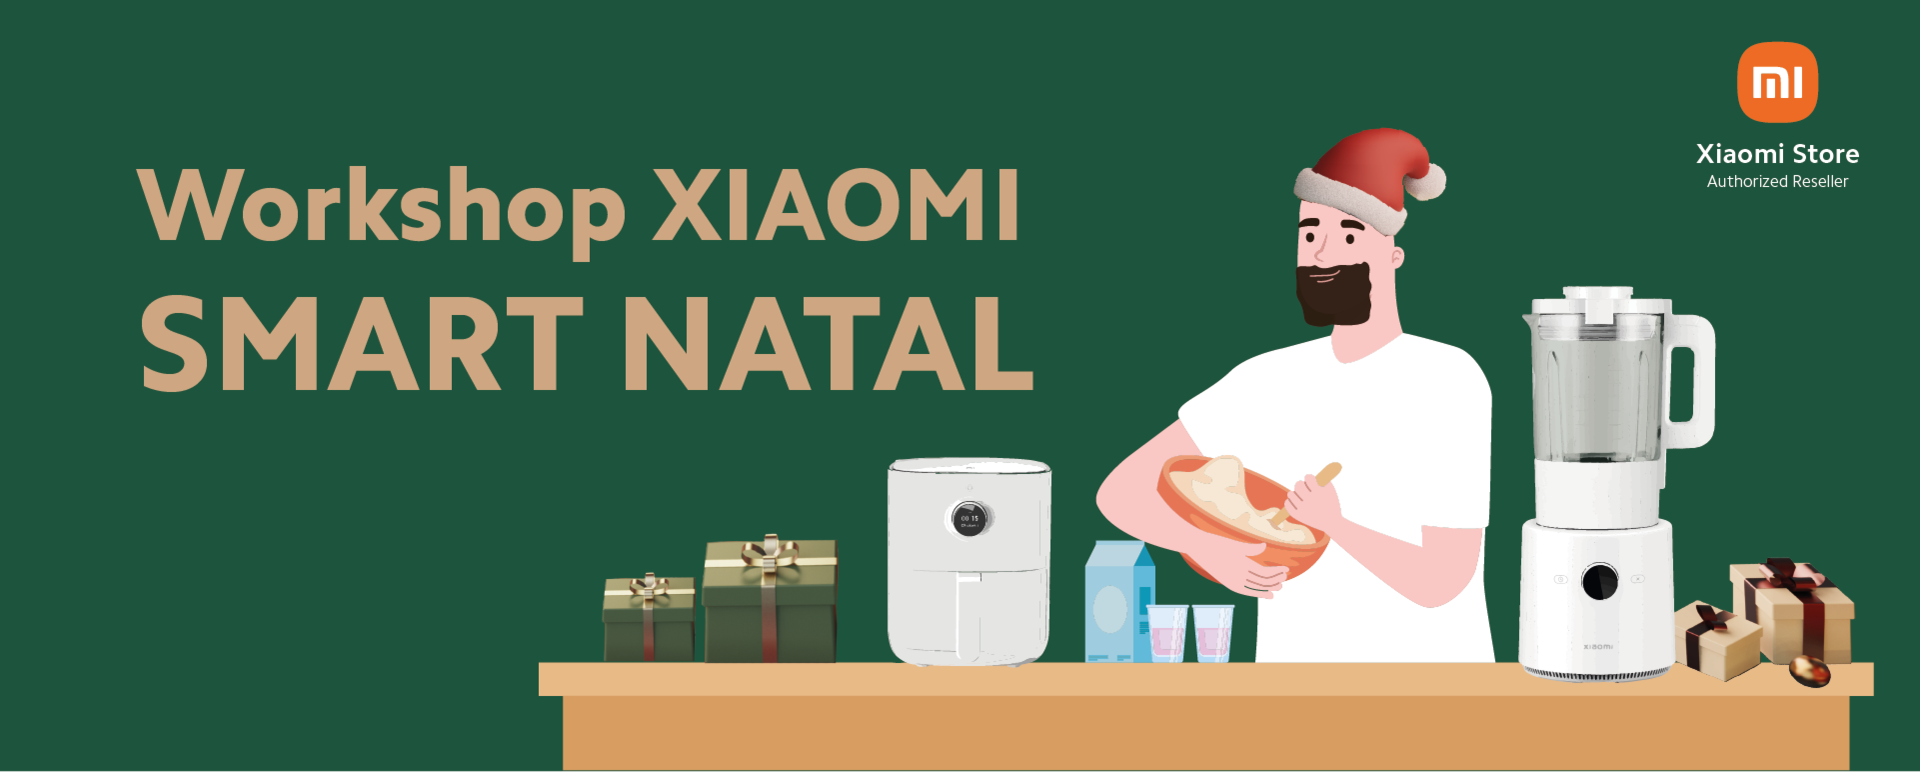 Xiaomi promove workshop para ensinar a cozinhar de forma mais "smart" no Natal